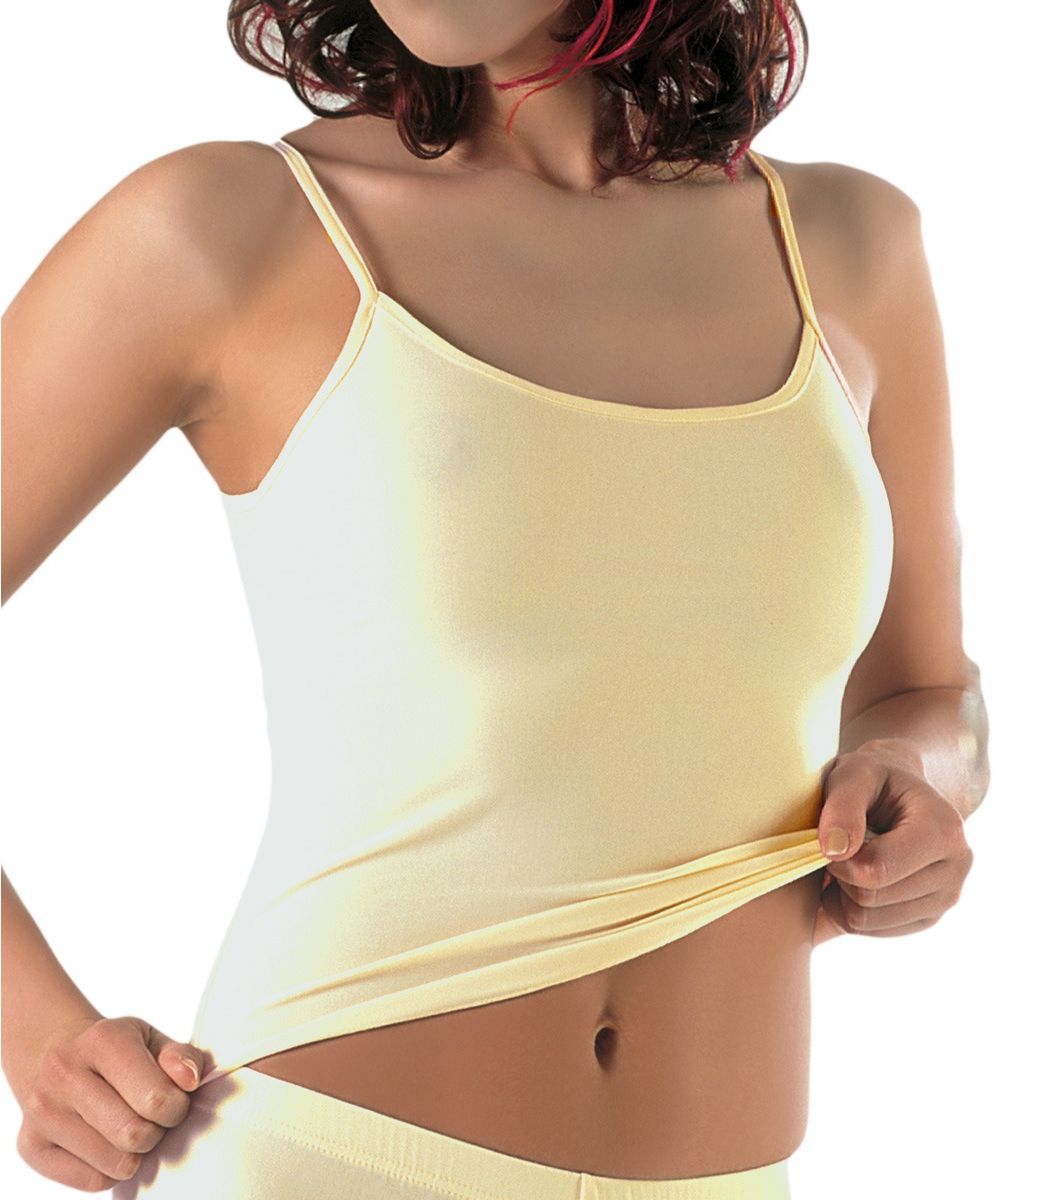 women underwear, camisole, microfibre offer Size Small Color cream